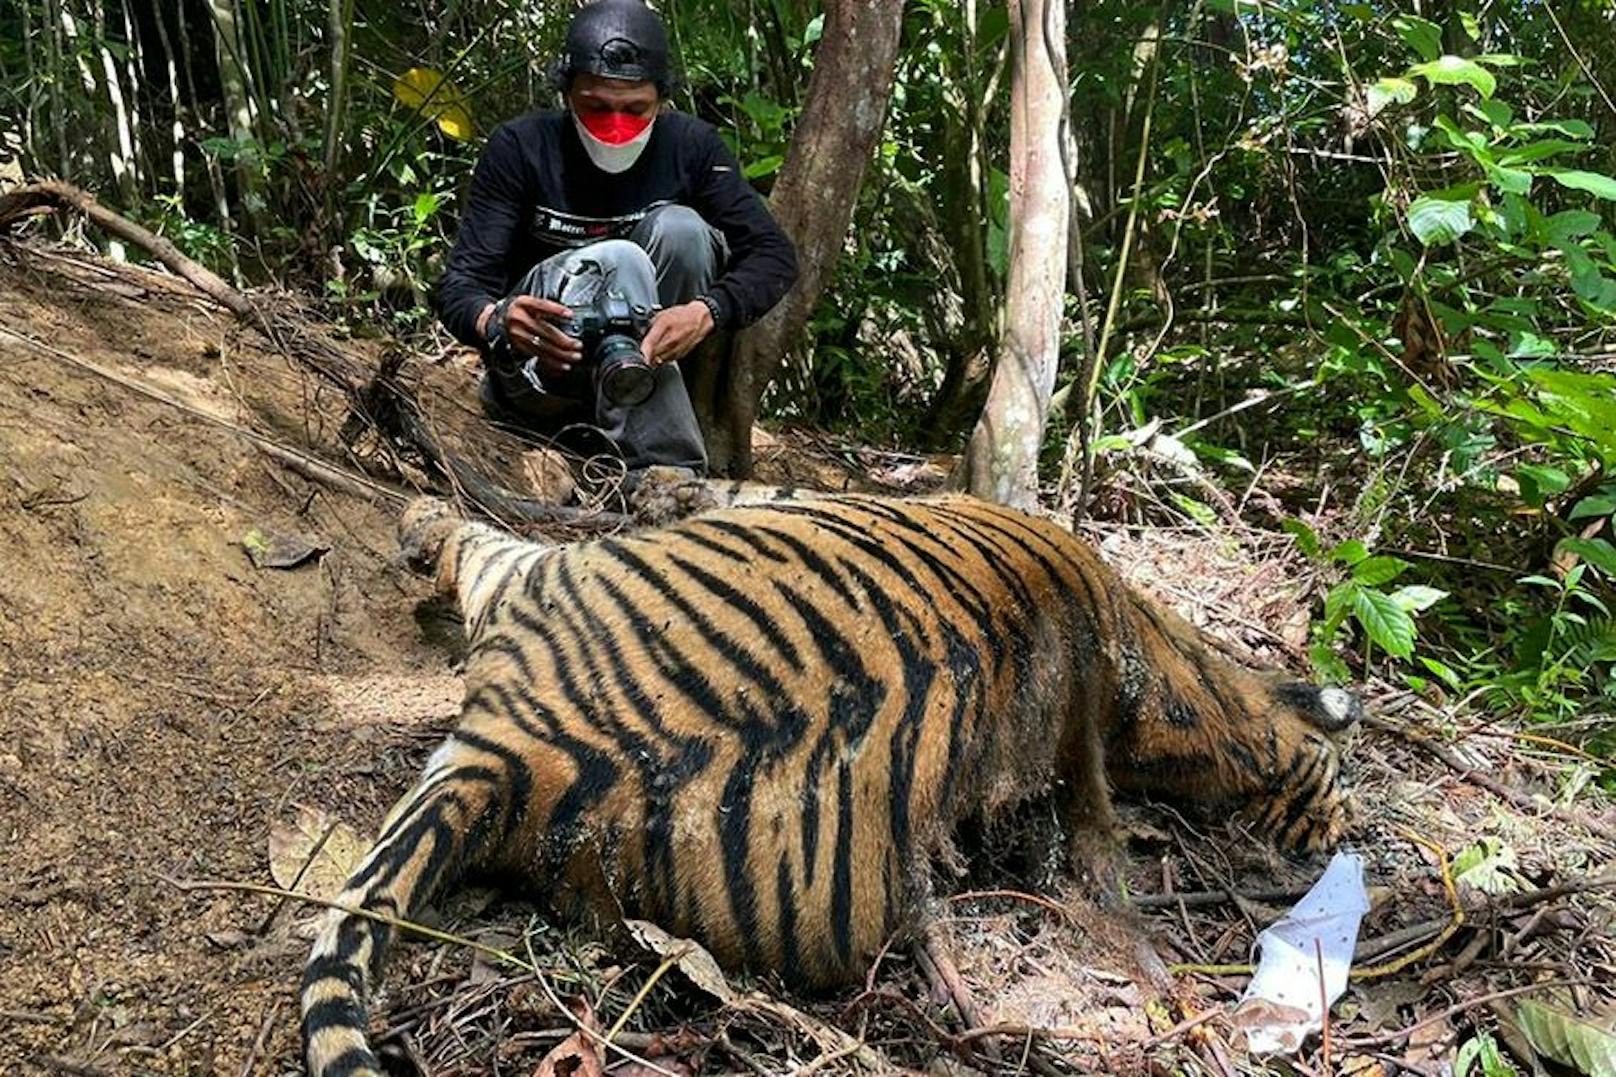 Ein besonders grausamer Fund im indonesischen Dschungel: Eine Sumatra-Tigermama und ihre beiden Jungen - zum Teil schon verfault.